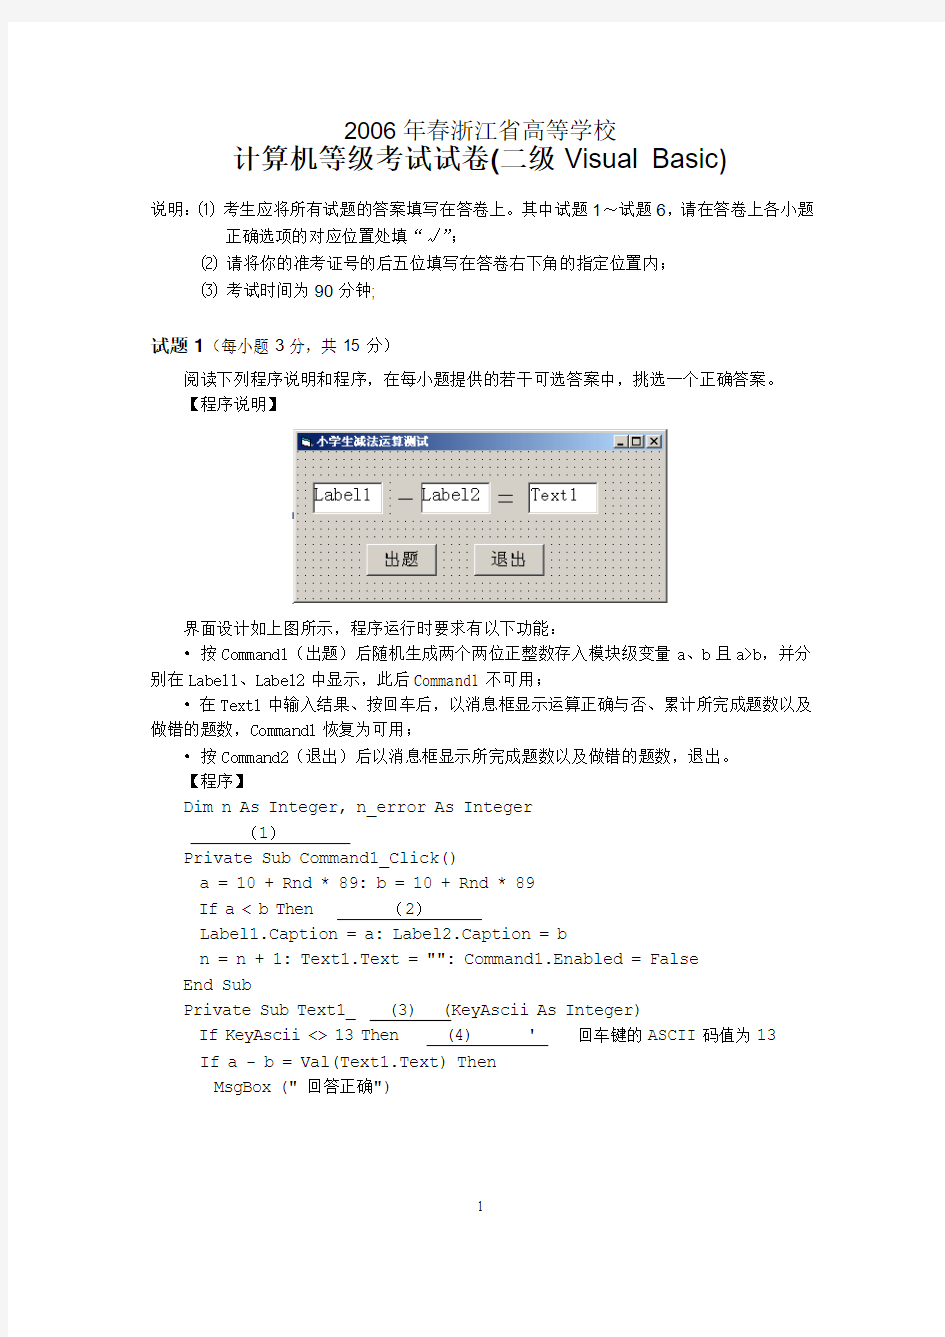 06年春浙江省高校计算机VB二级等级考试真题试卷(含答案)